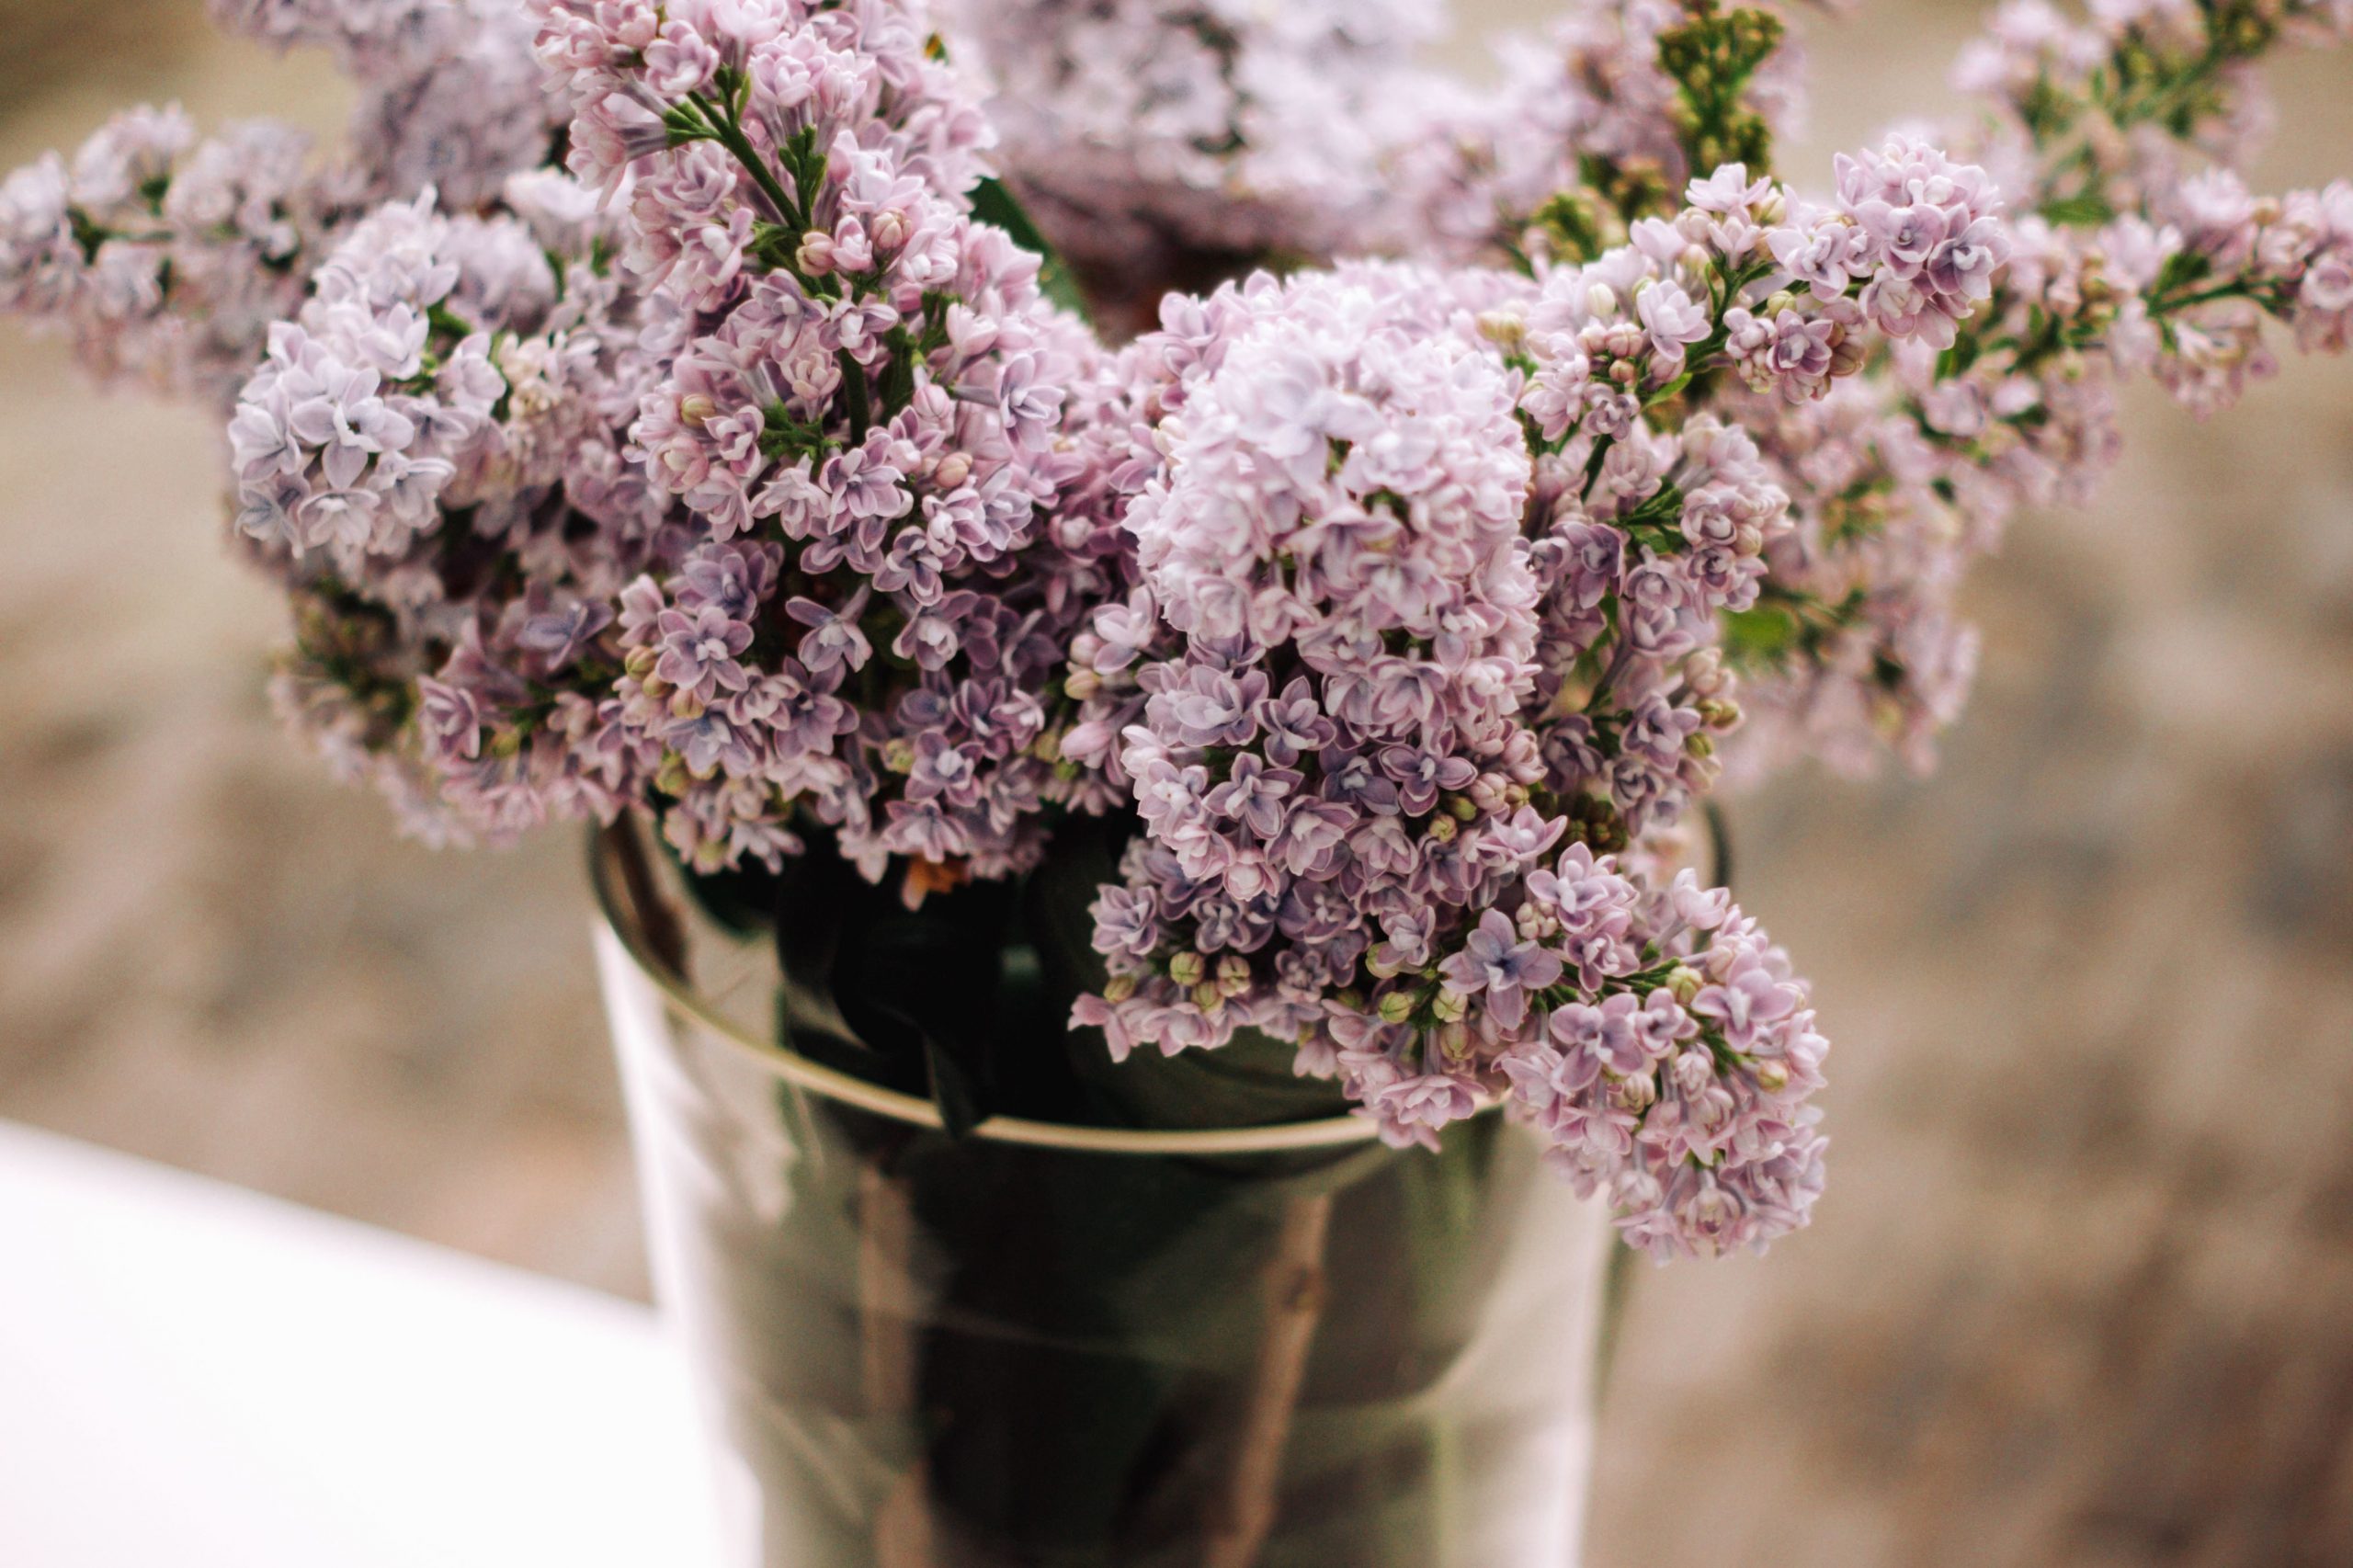 Flieder in der Vase hellrosafarbene Blüten als Blickfang herrlicher Duft zu Hause Ideen